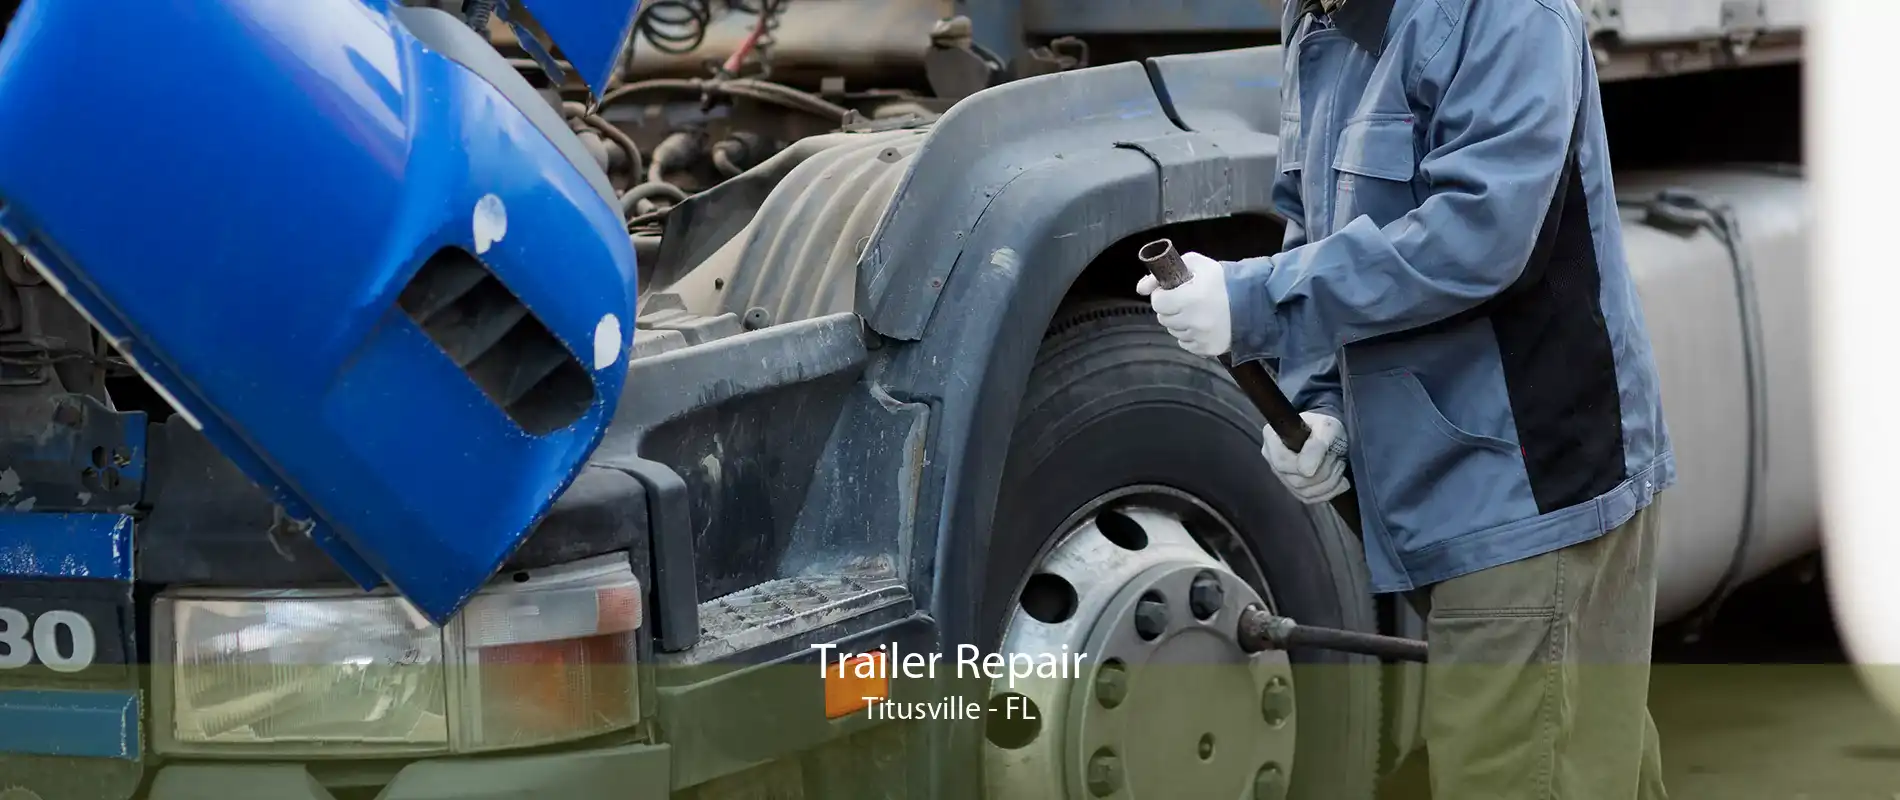 Trailer Repair Titusville - FL